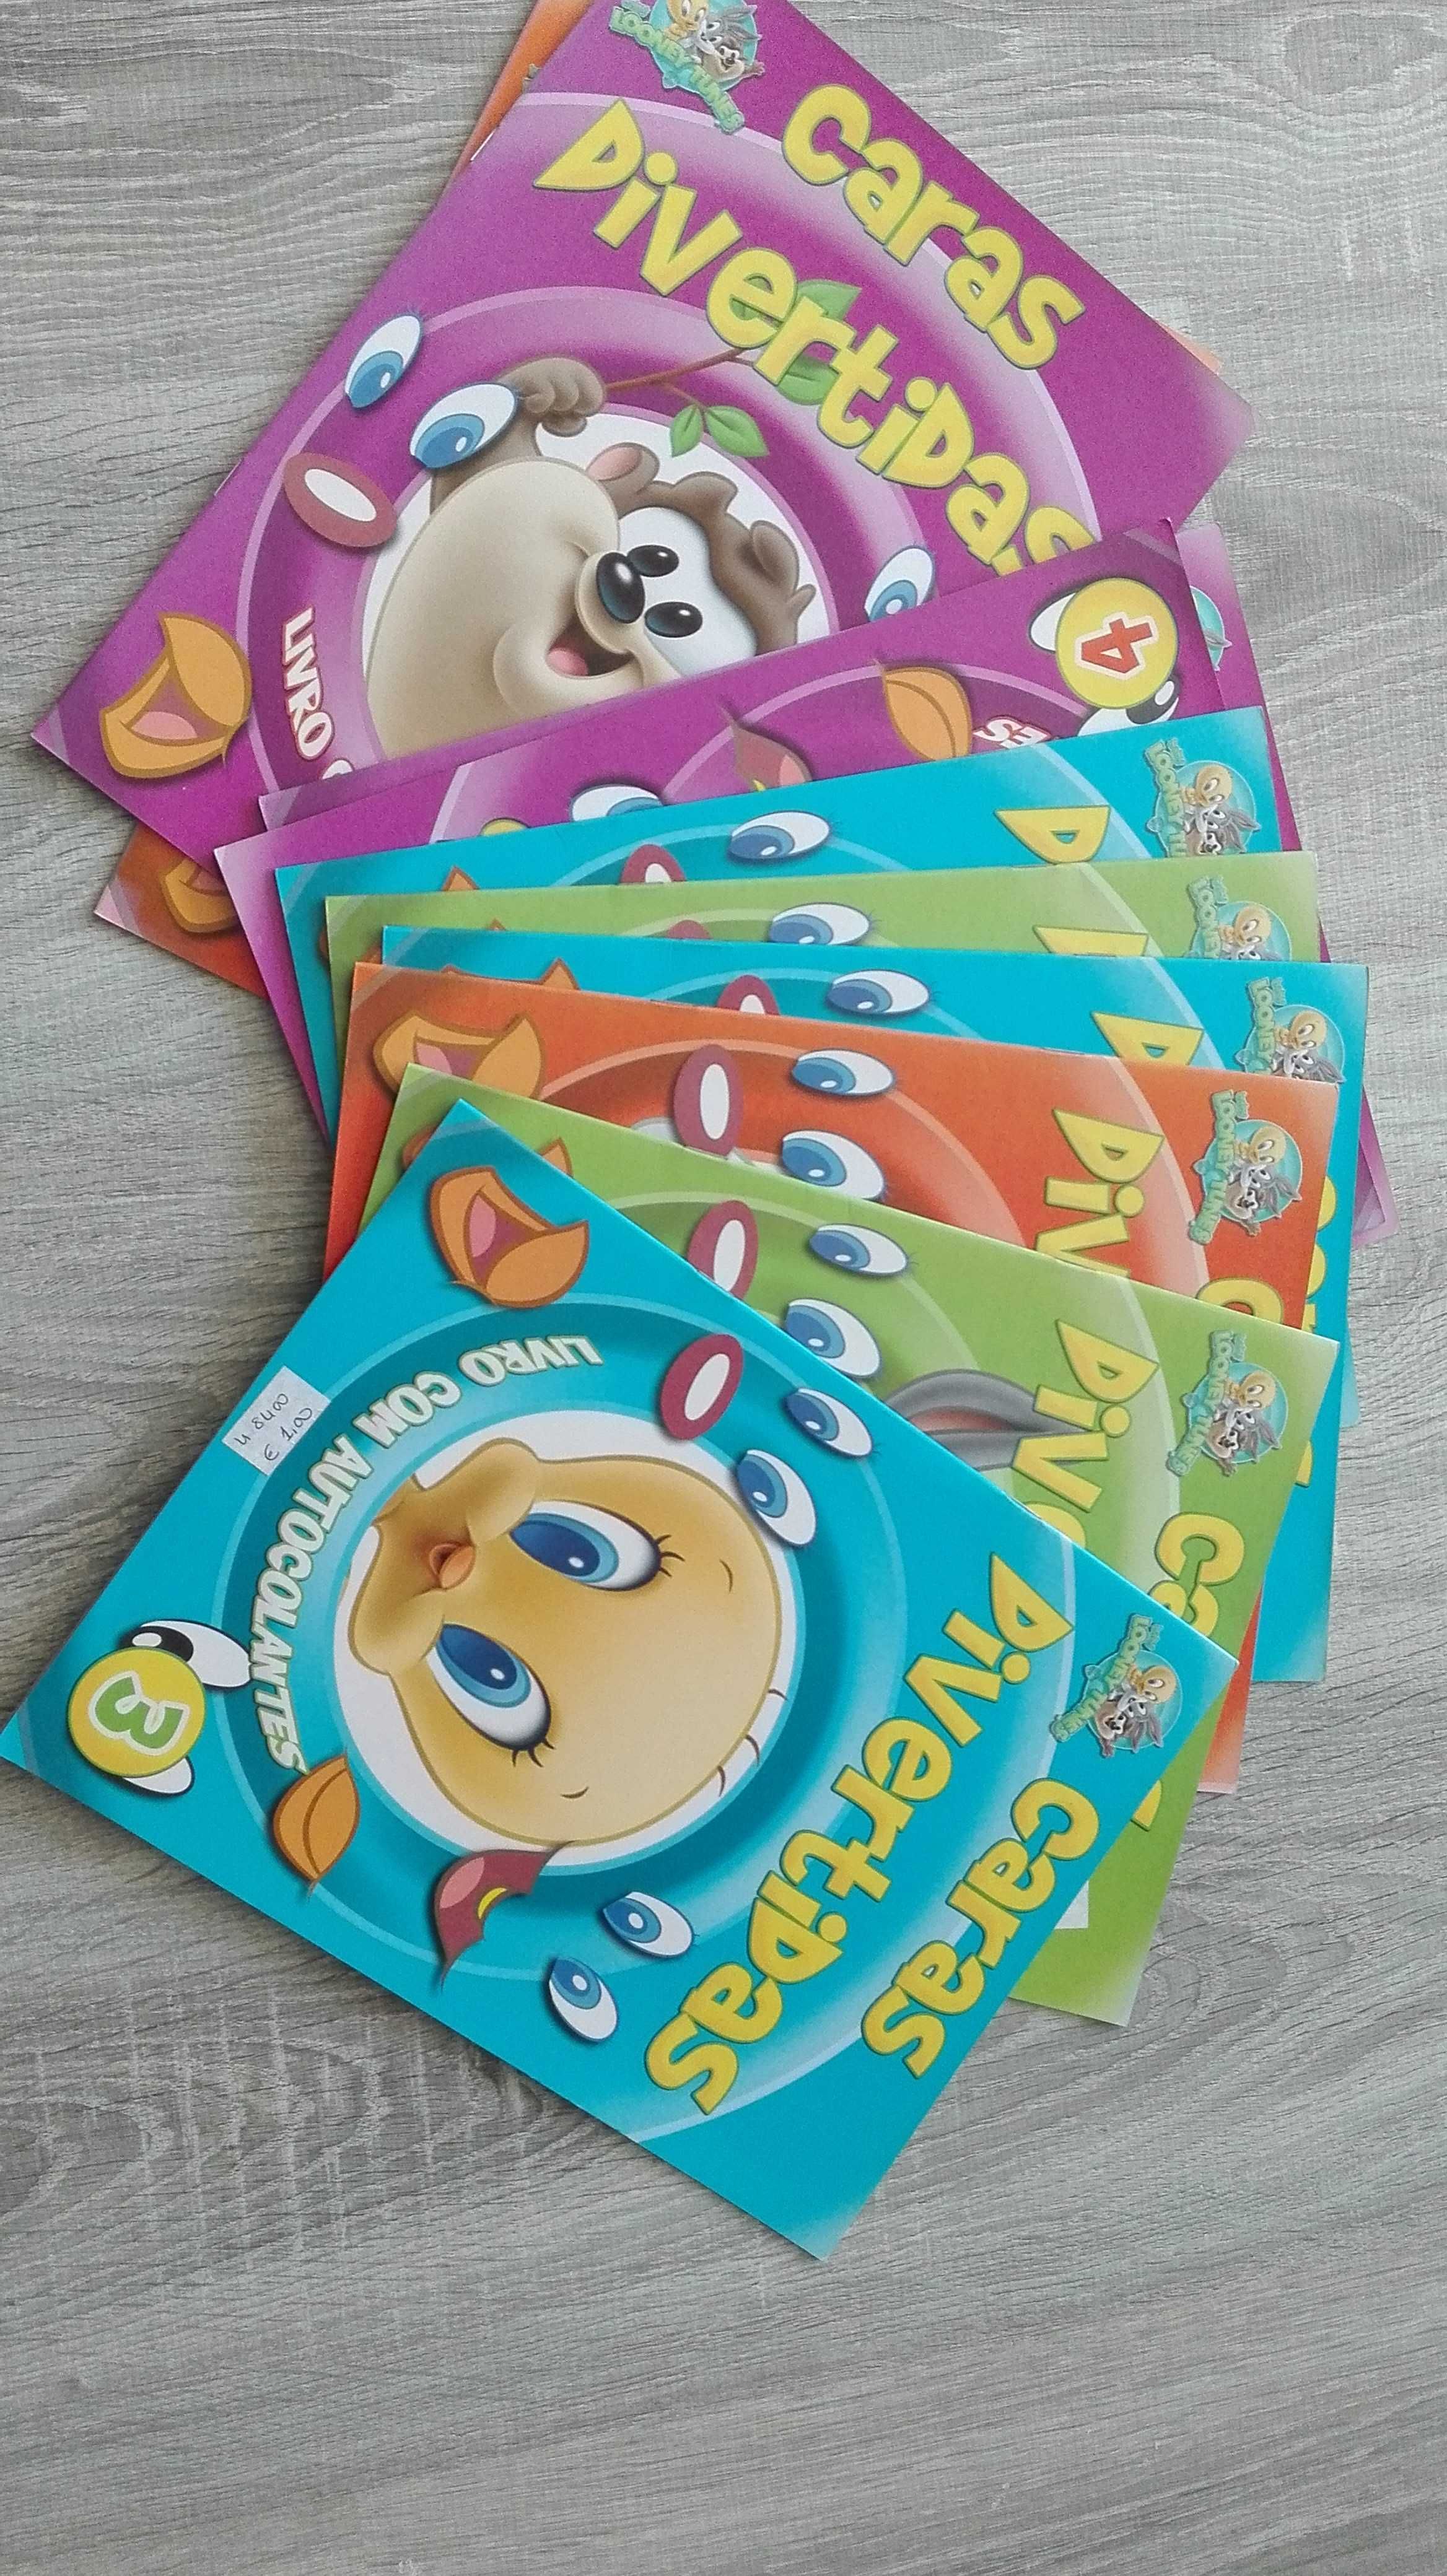 Livros com atividades crianças